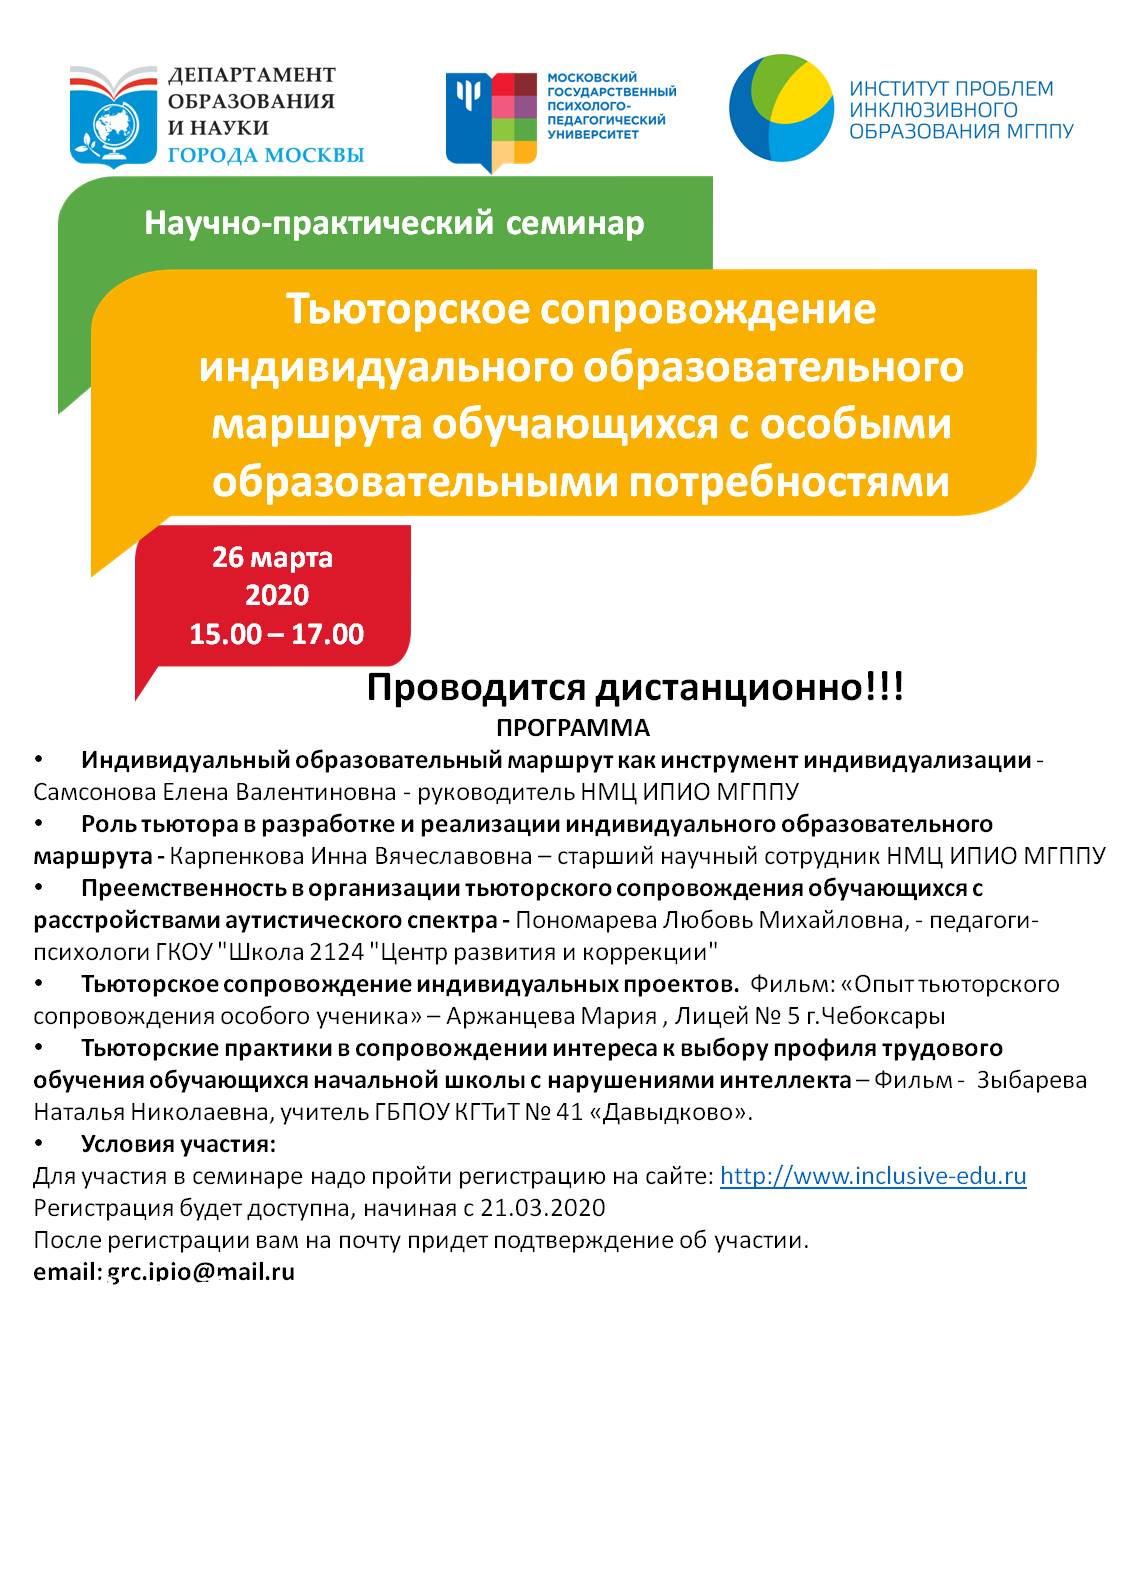 Всероссийский научно-практический семинар в дистанционной форме